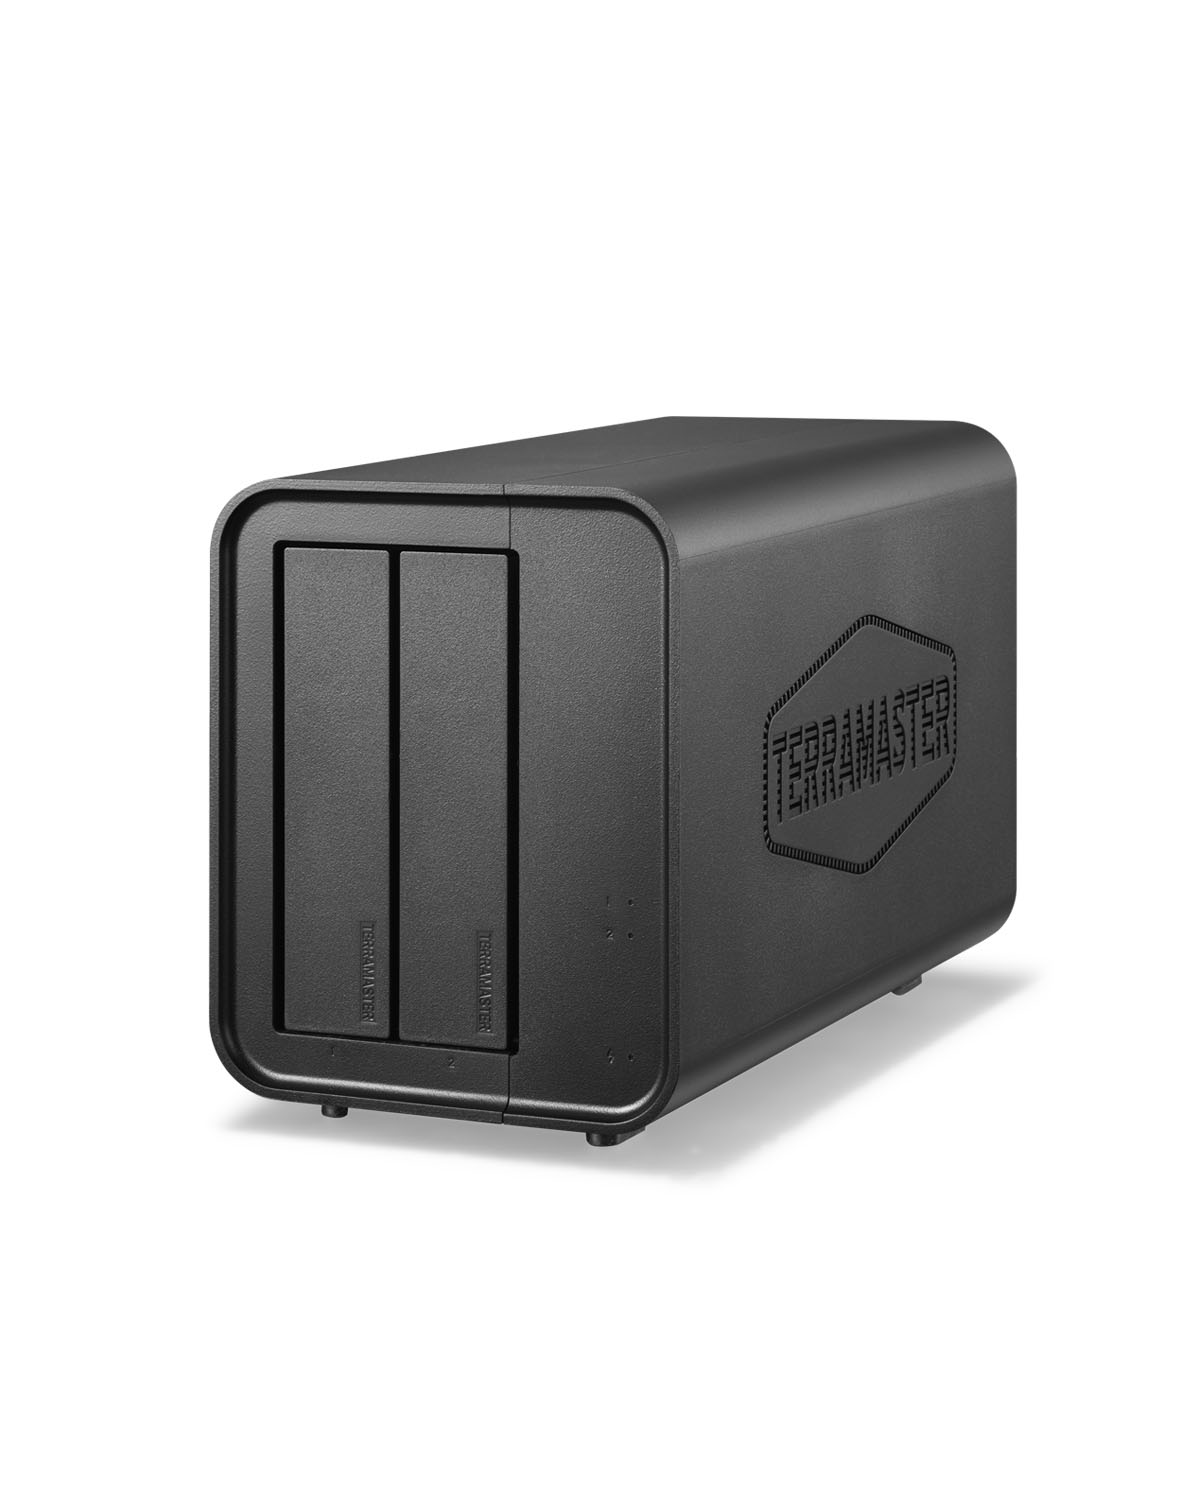 TerraMaster D2-320 USB DAS 2-bay 